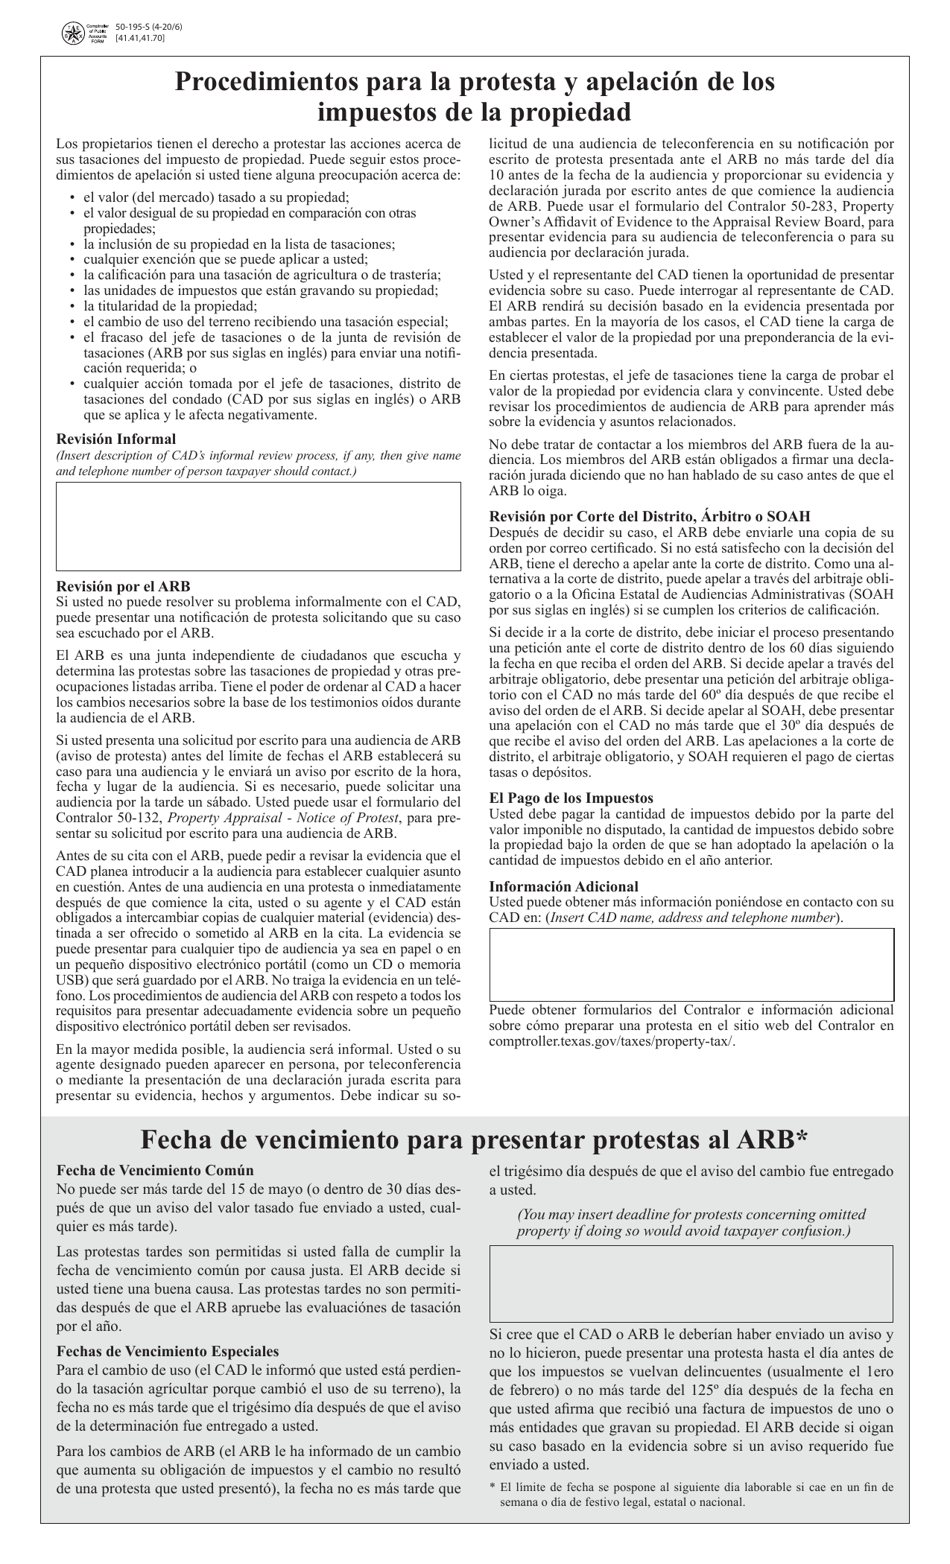 Formulario 50-195-S Procedimientos Para La Protesta Y Apelacion De Los Impuestos De La Propiedad - Texas (Spanish), Page 1